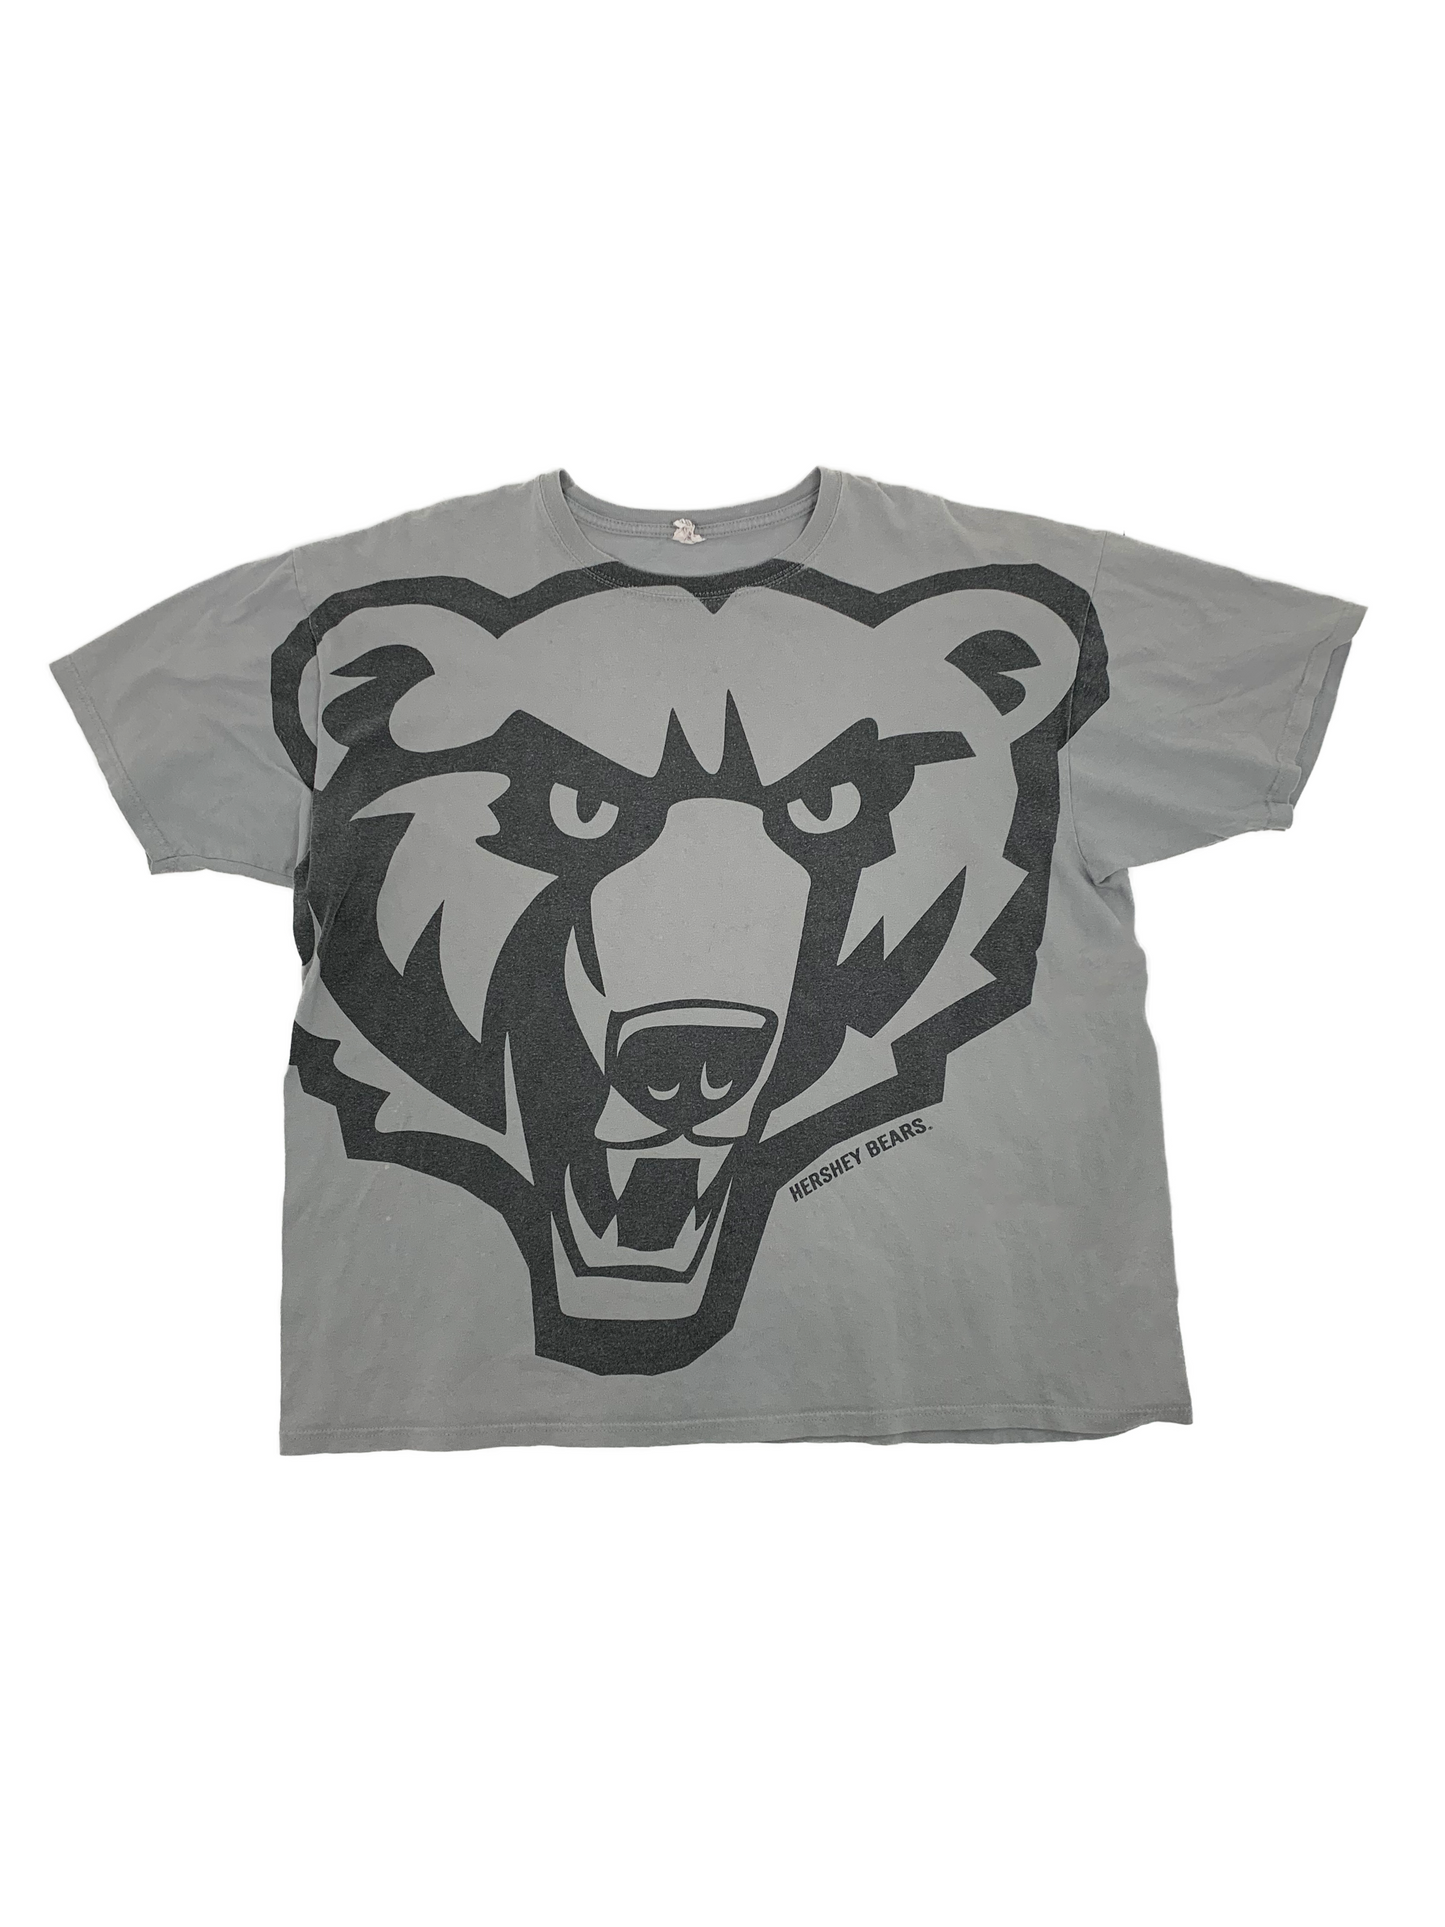 Hershey Bears T-Shirt